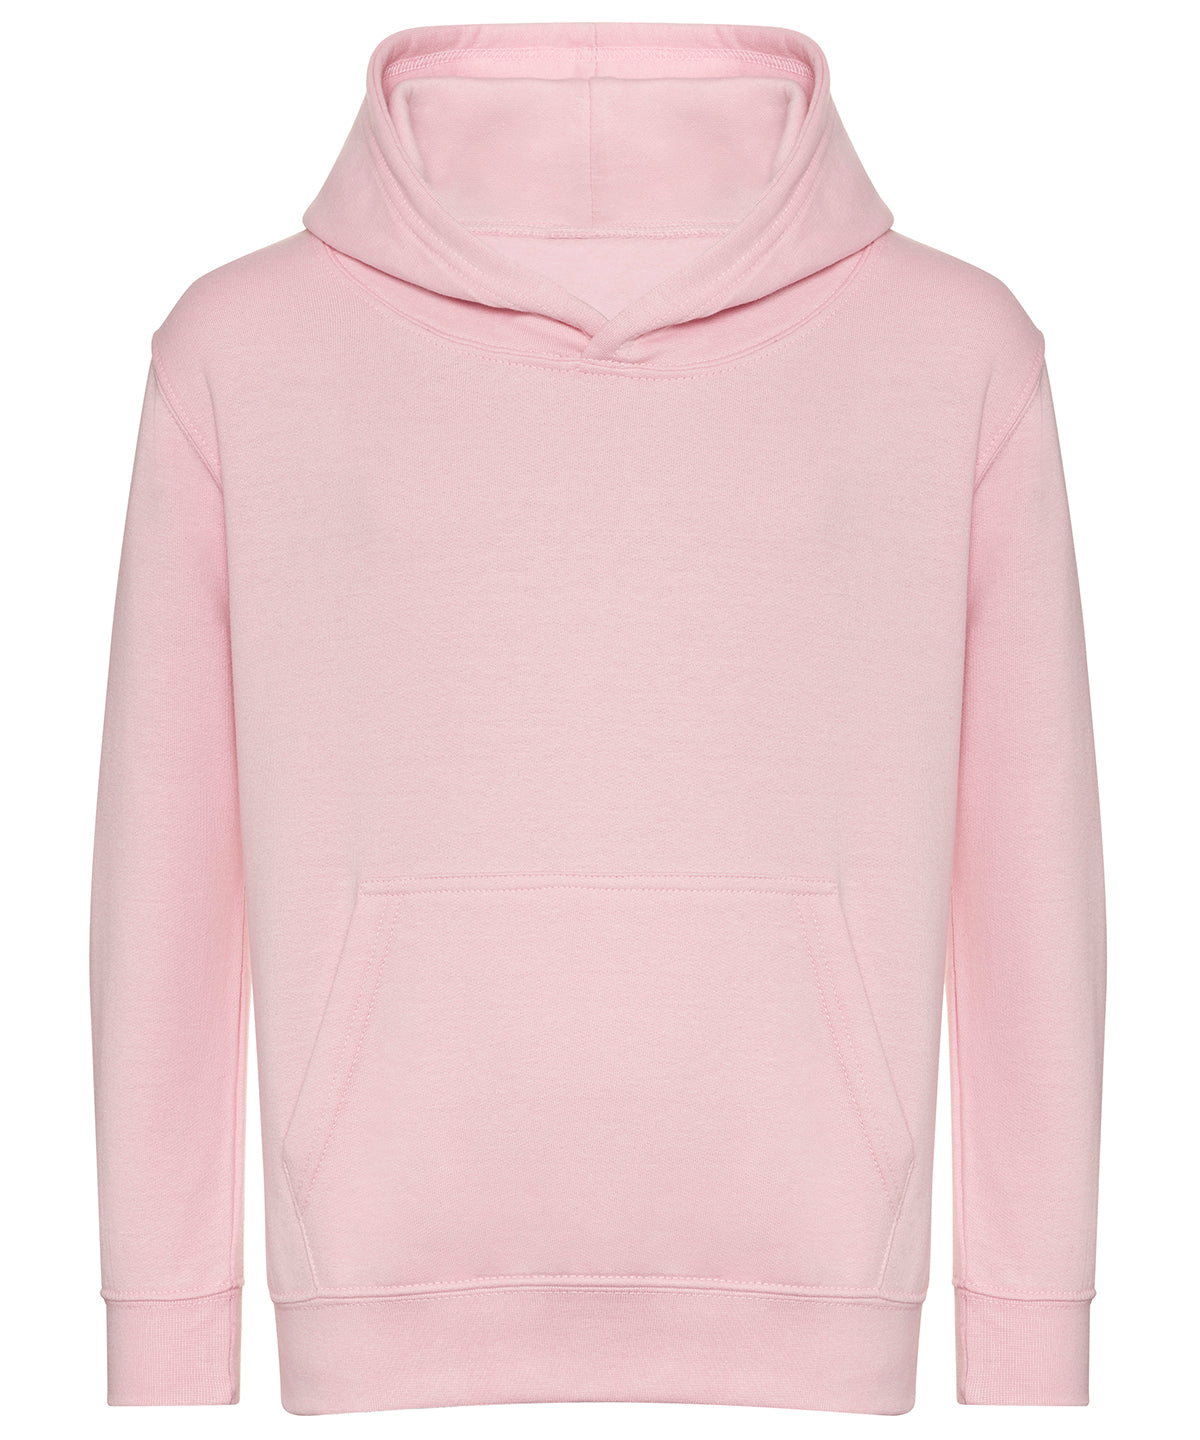 Personalised Hoodies - White AWDis Just Hoods Kids organic hoodie